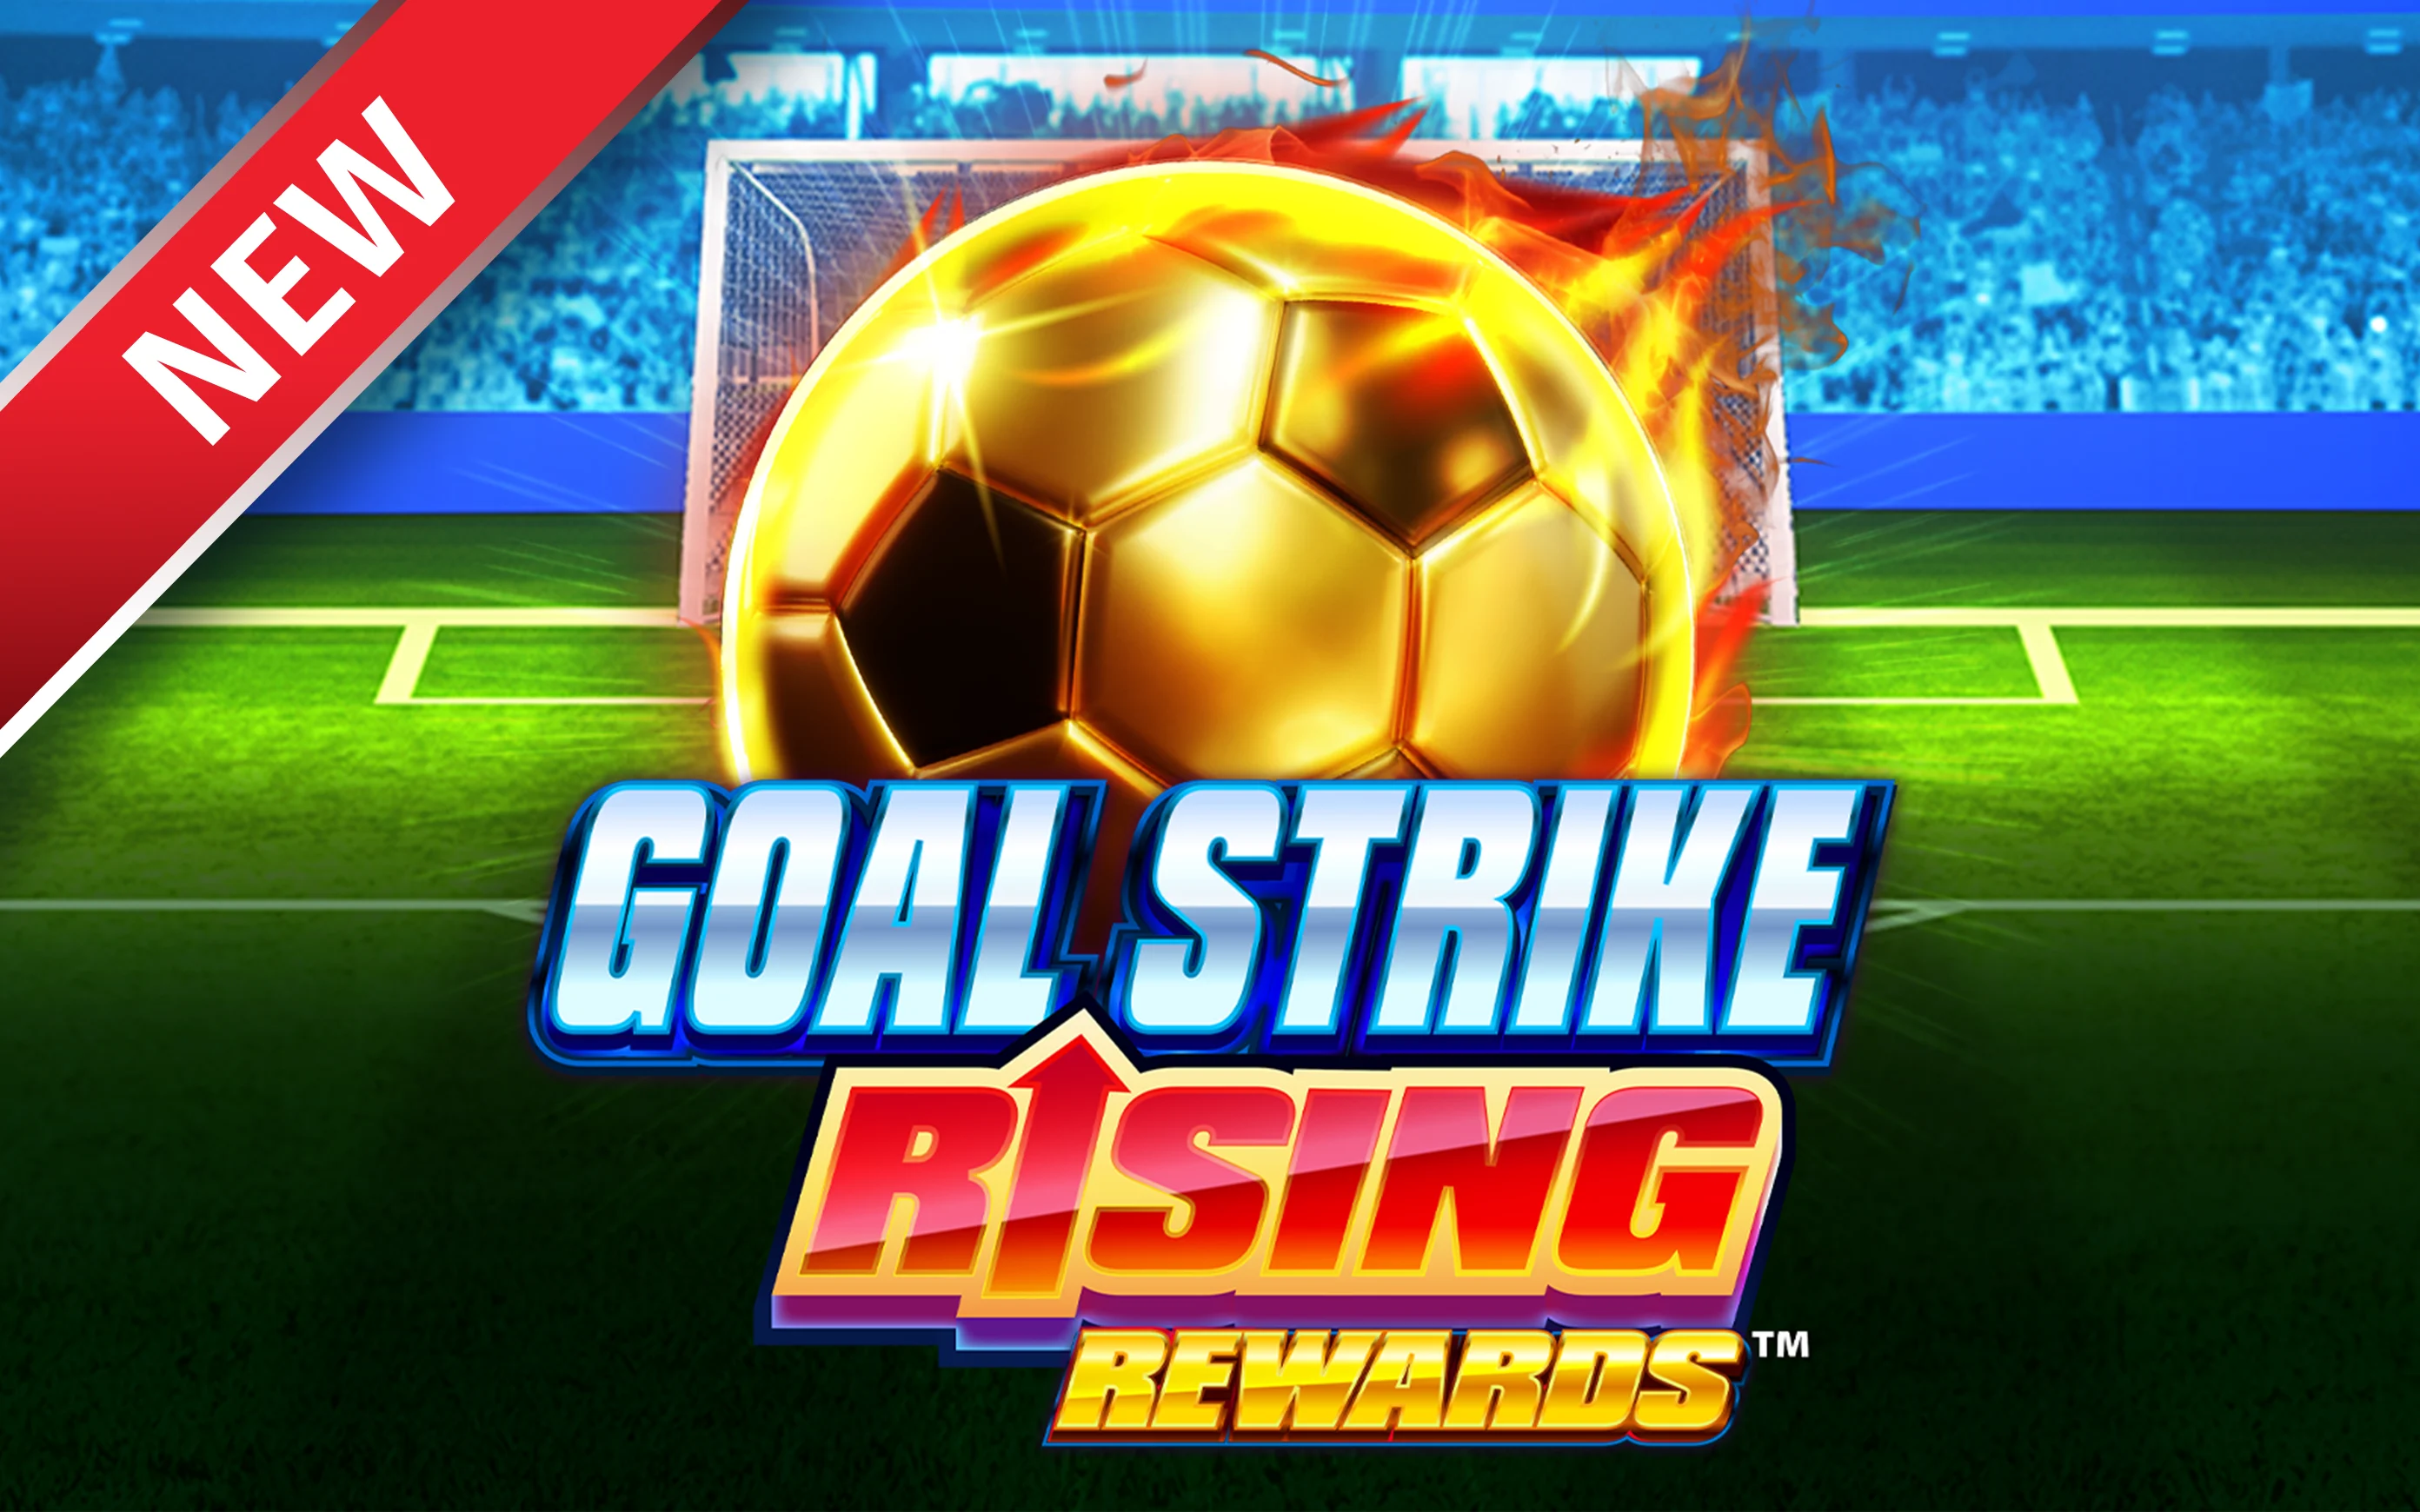 Spil Goal Strike Rising Rewards™ på Starcasino.be online kasino
